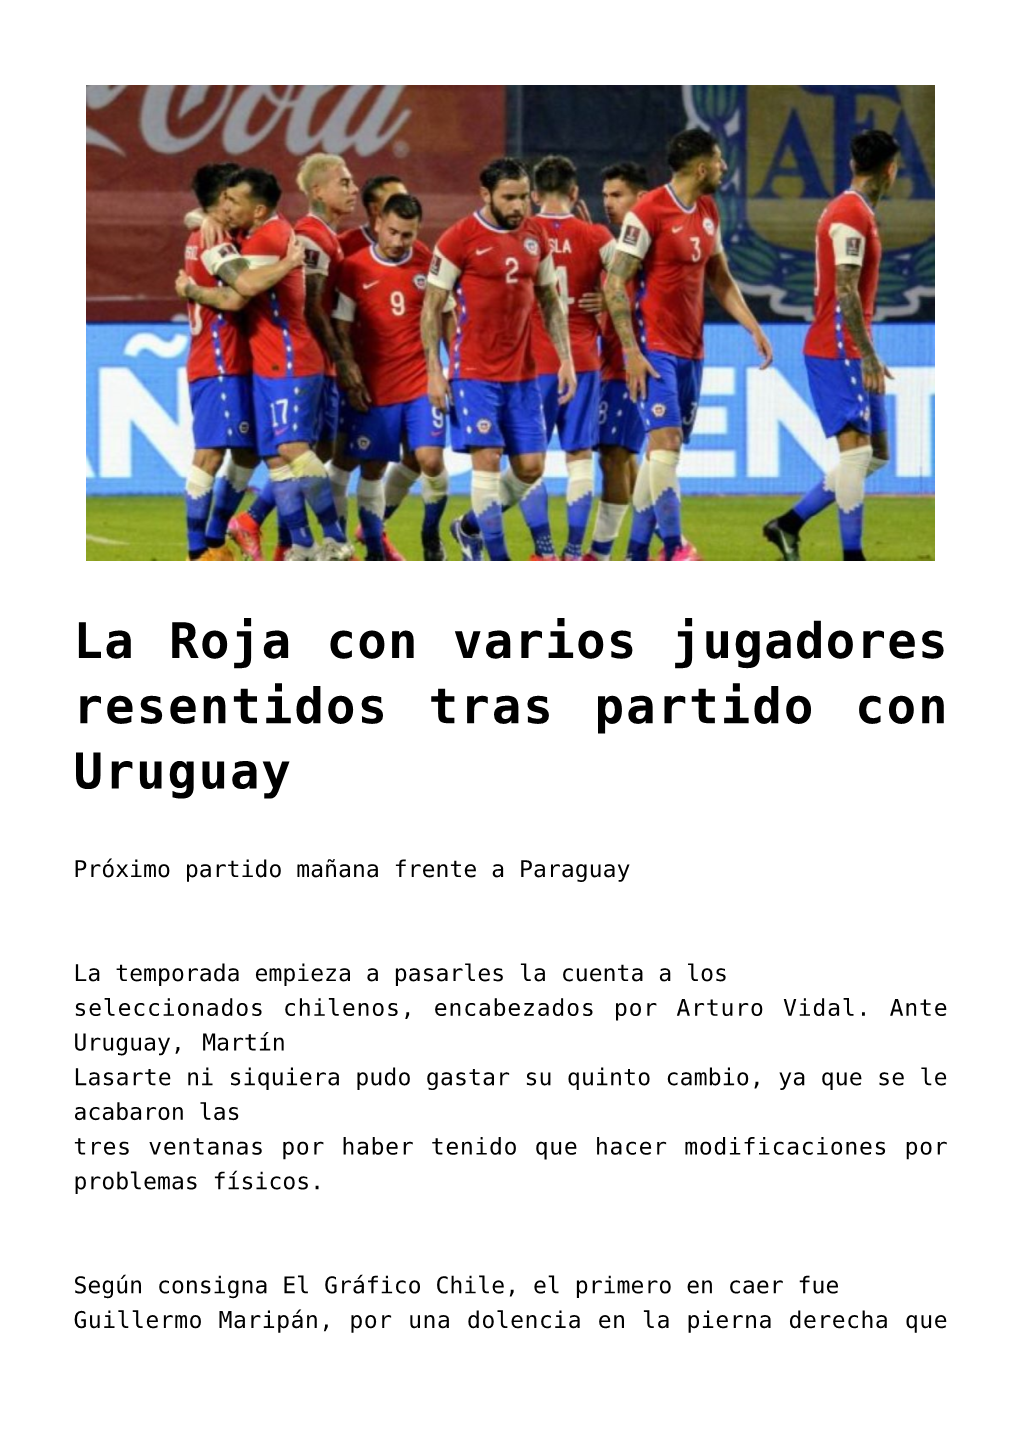 La Roja Con Varios Jugadores Resentidos Tras Partido Con Uruguay